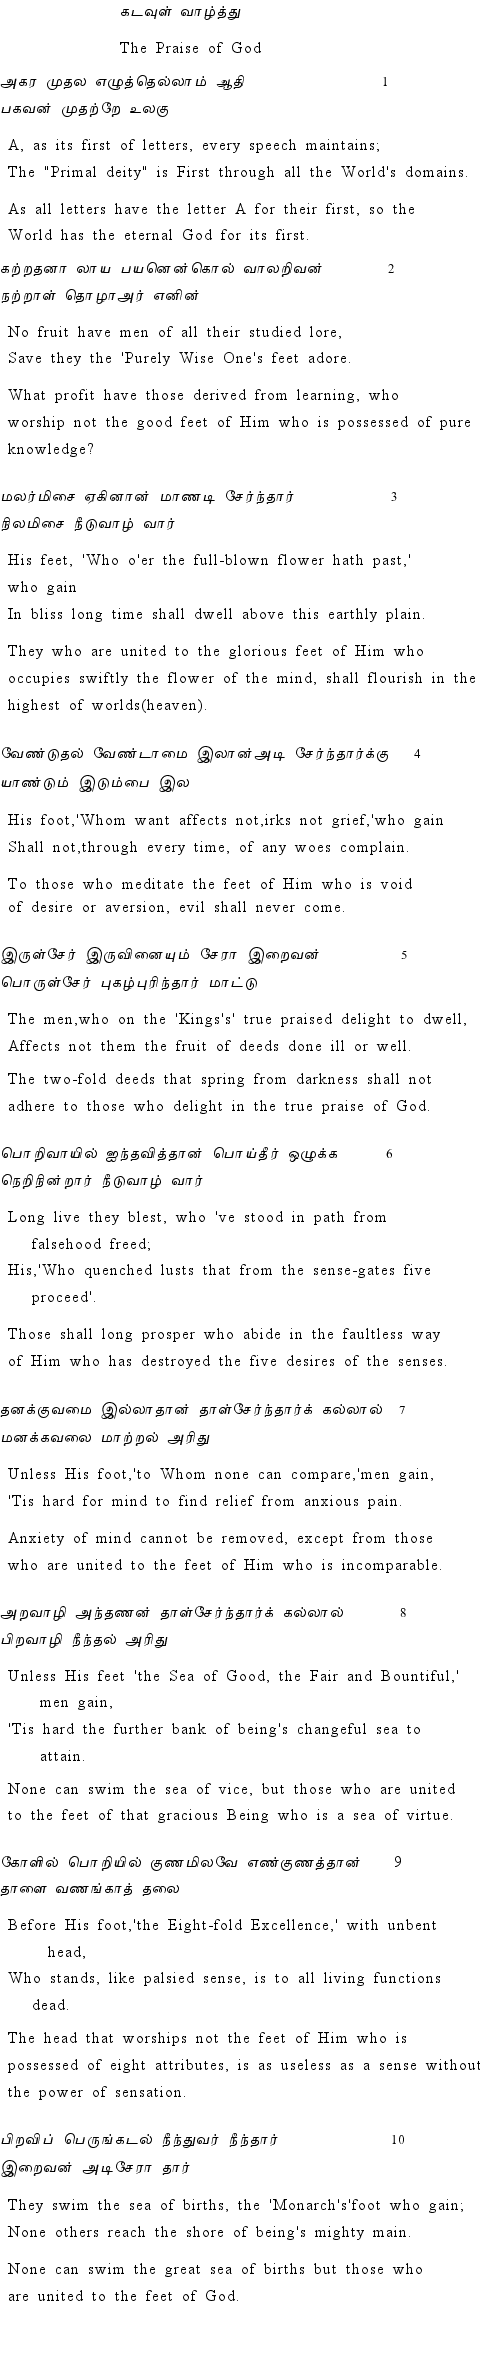 Text of Adhikaram 1